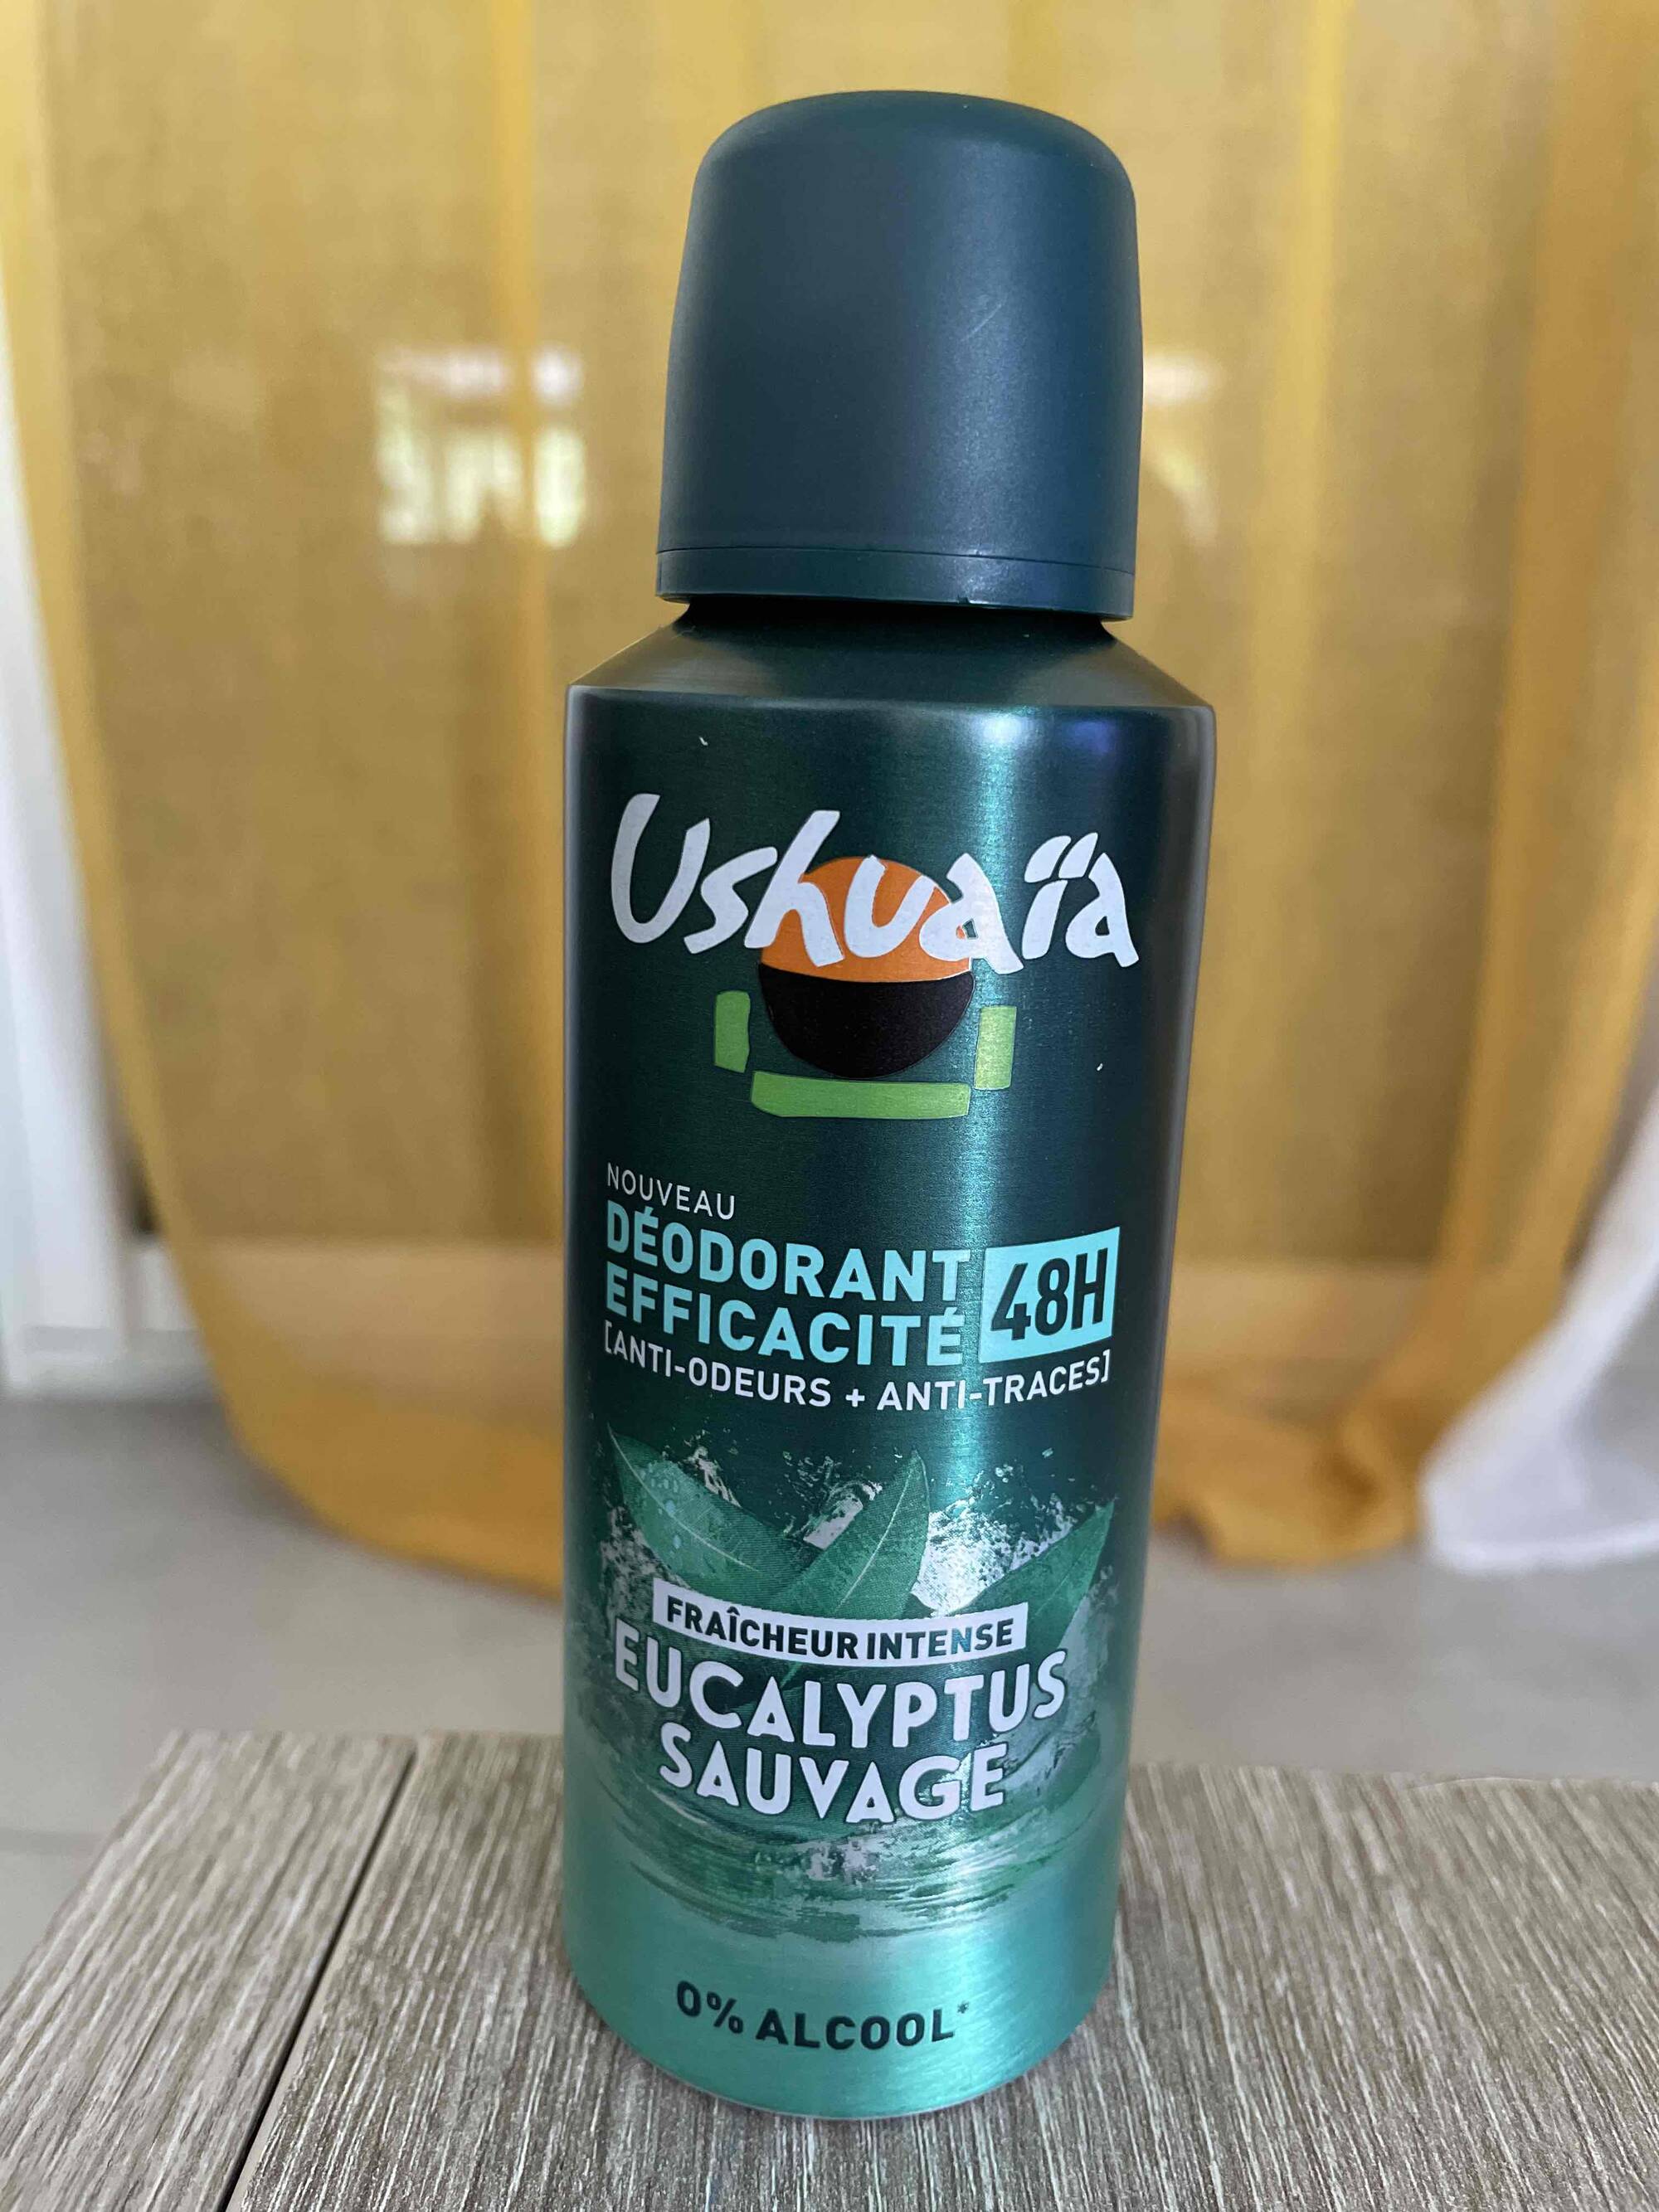 USHUAI - Déodorant eucalyptus sauvage 48h